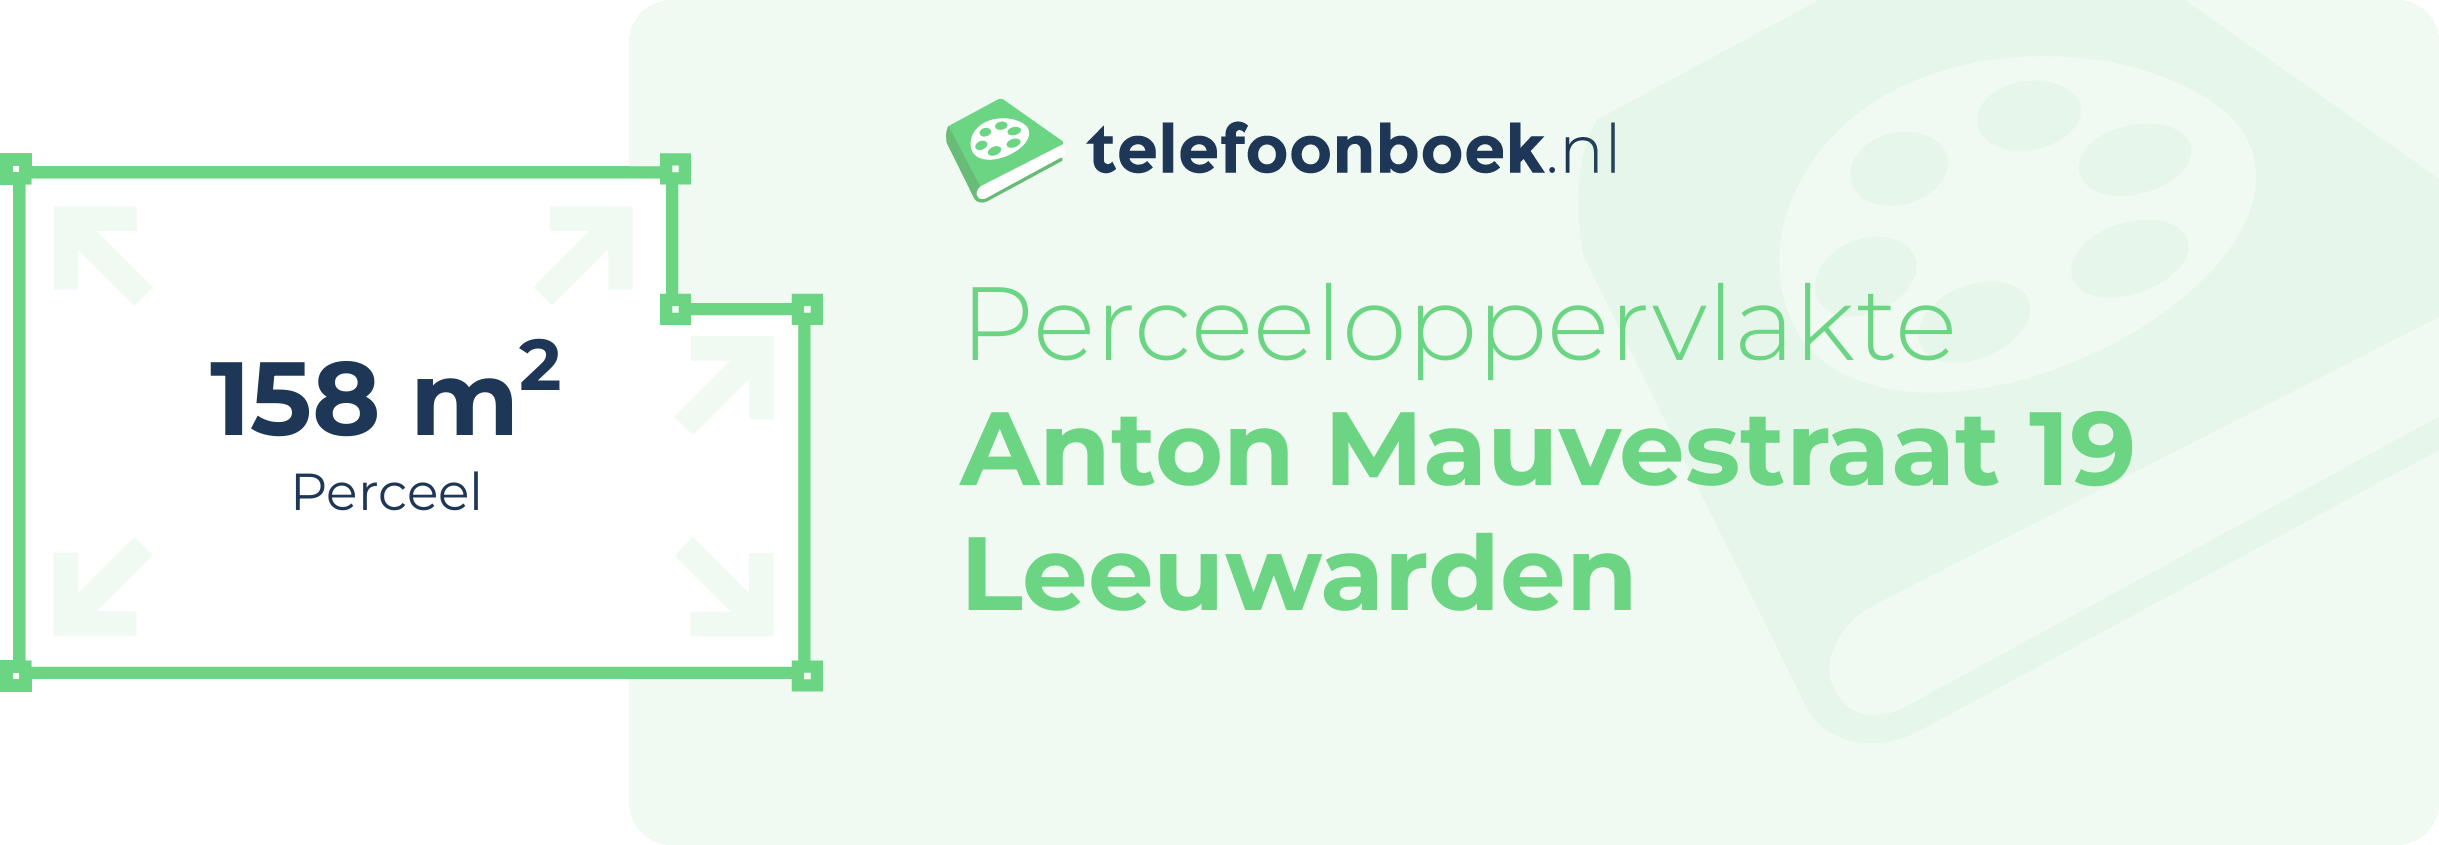 Perceeloppervlakte Anton Mauvestraat 19 Leeuwarden